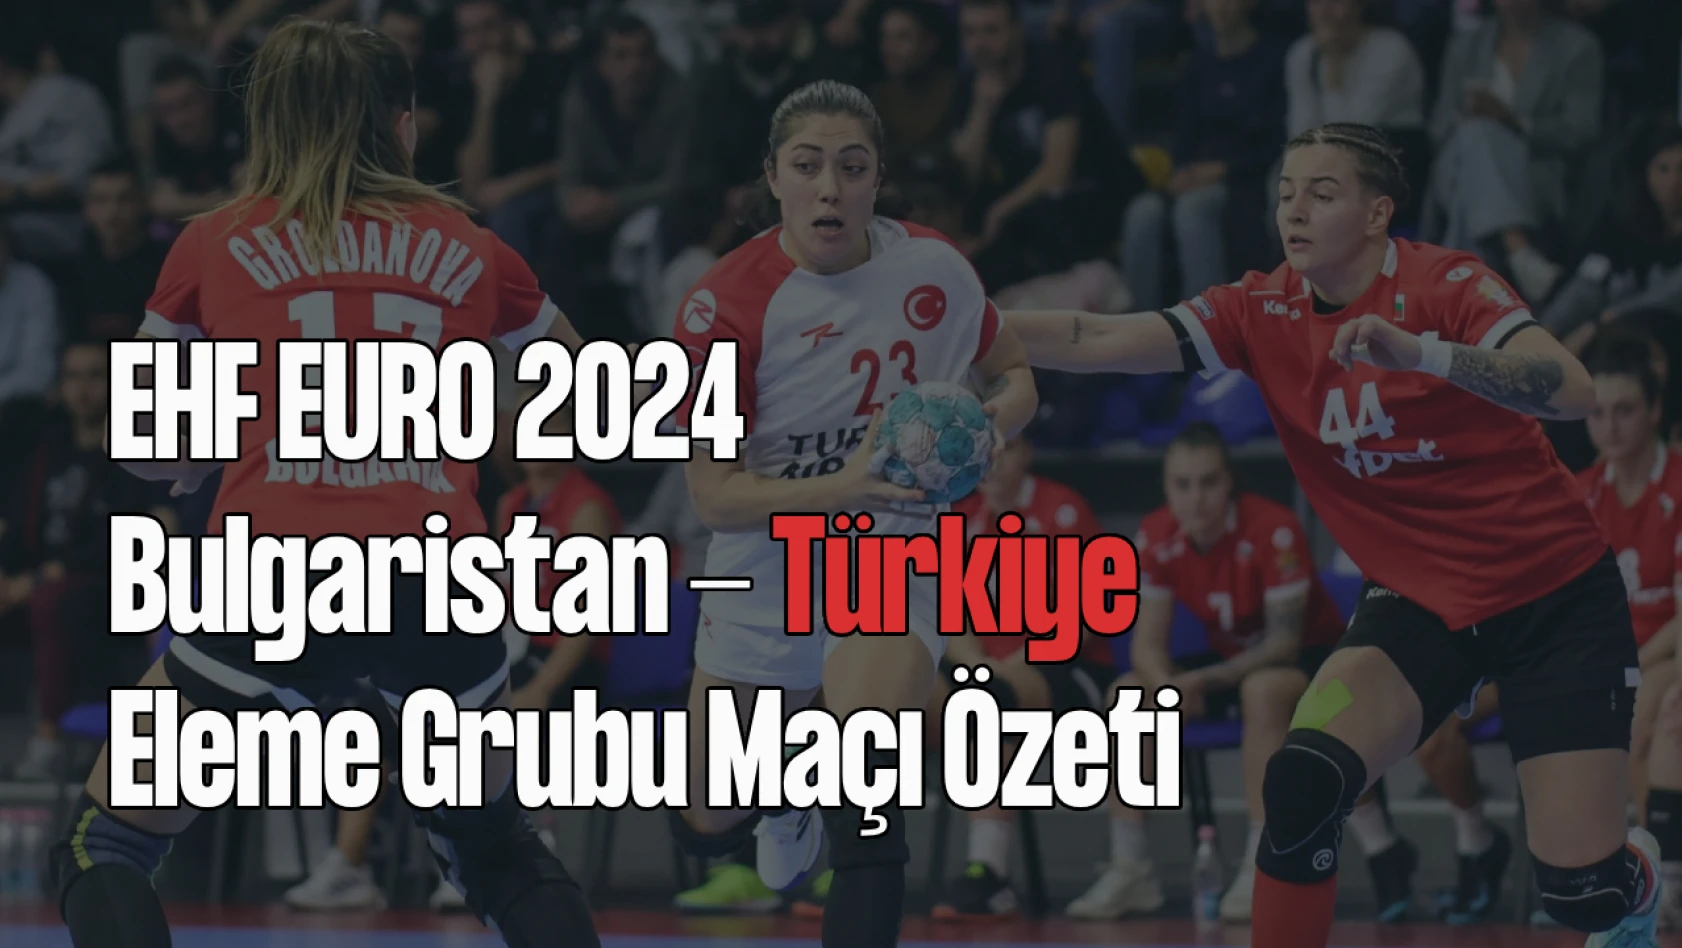 Bulgaristan - Türkiye, EHF Euro 2024 Eleme Grubu Maçı Özeti